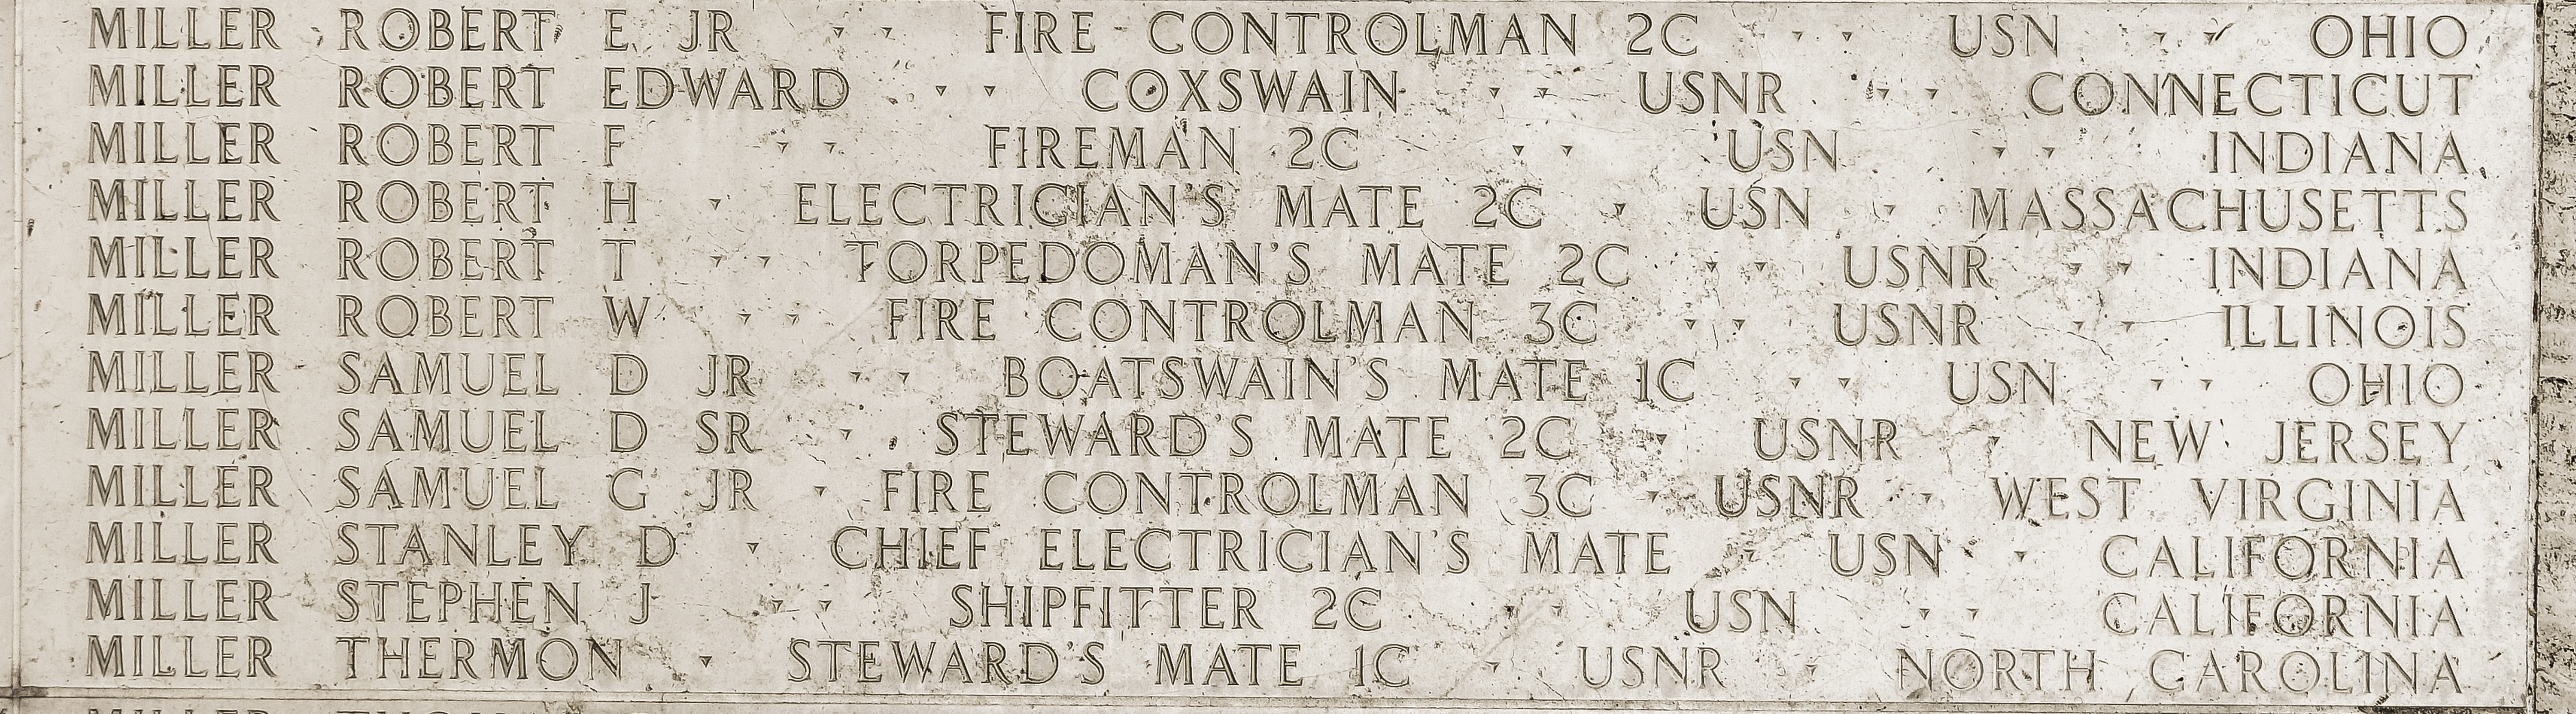 Robert W. Miller, Fire Controlman Third Class